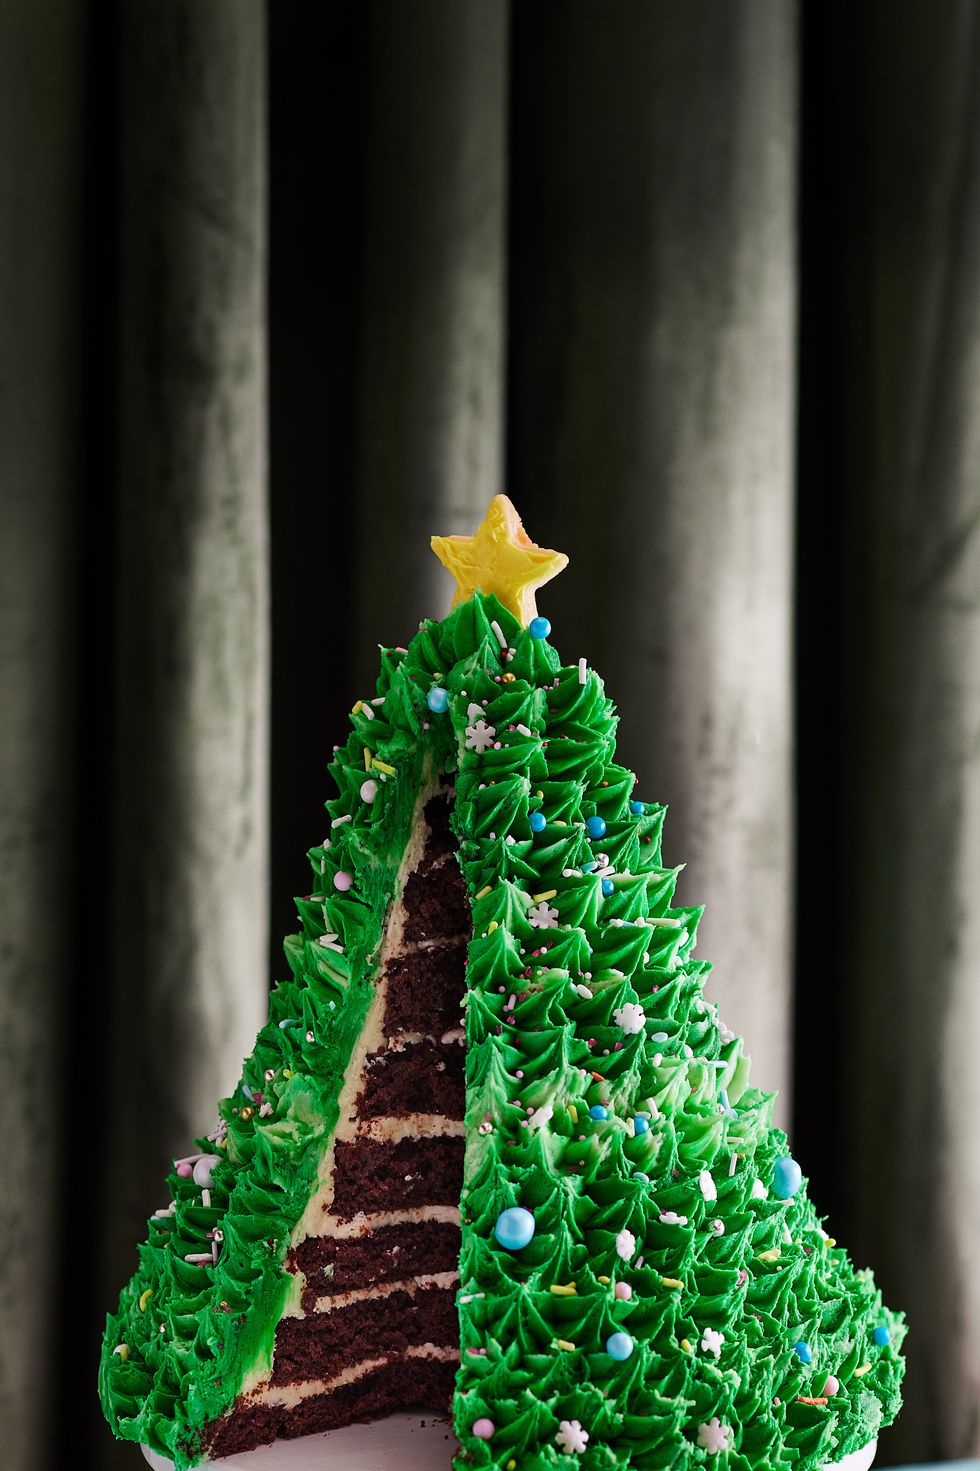 52 Best Christmas Cake Recipes - Easy Christmas Cake Ideas